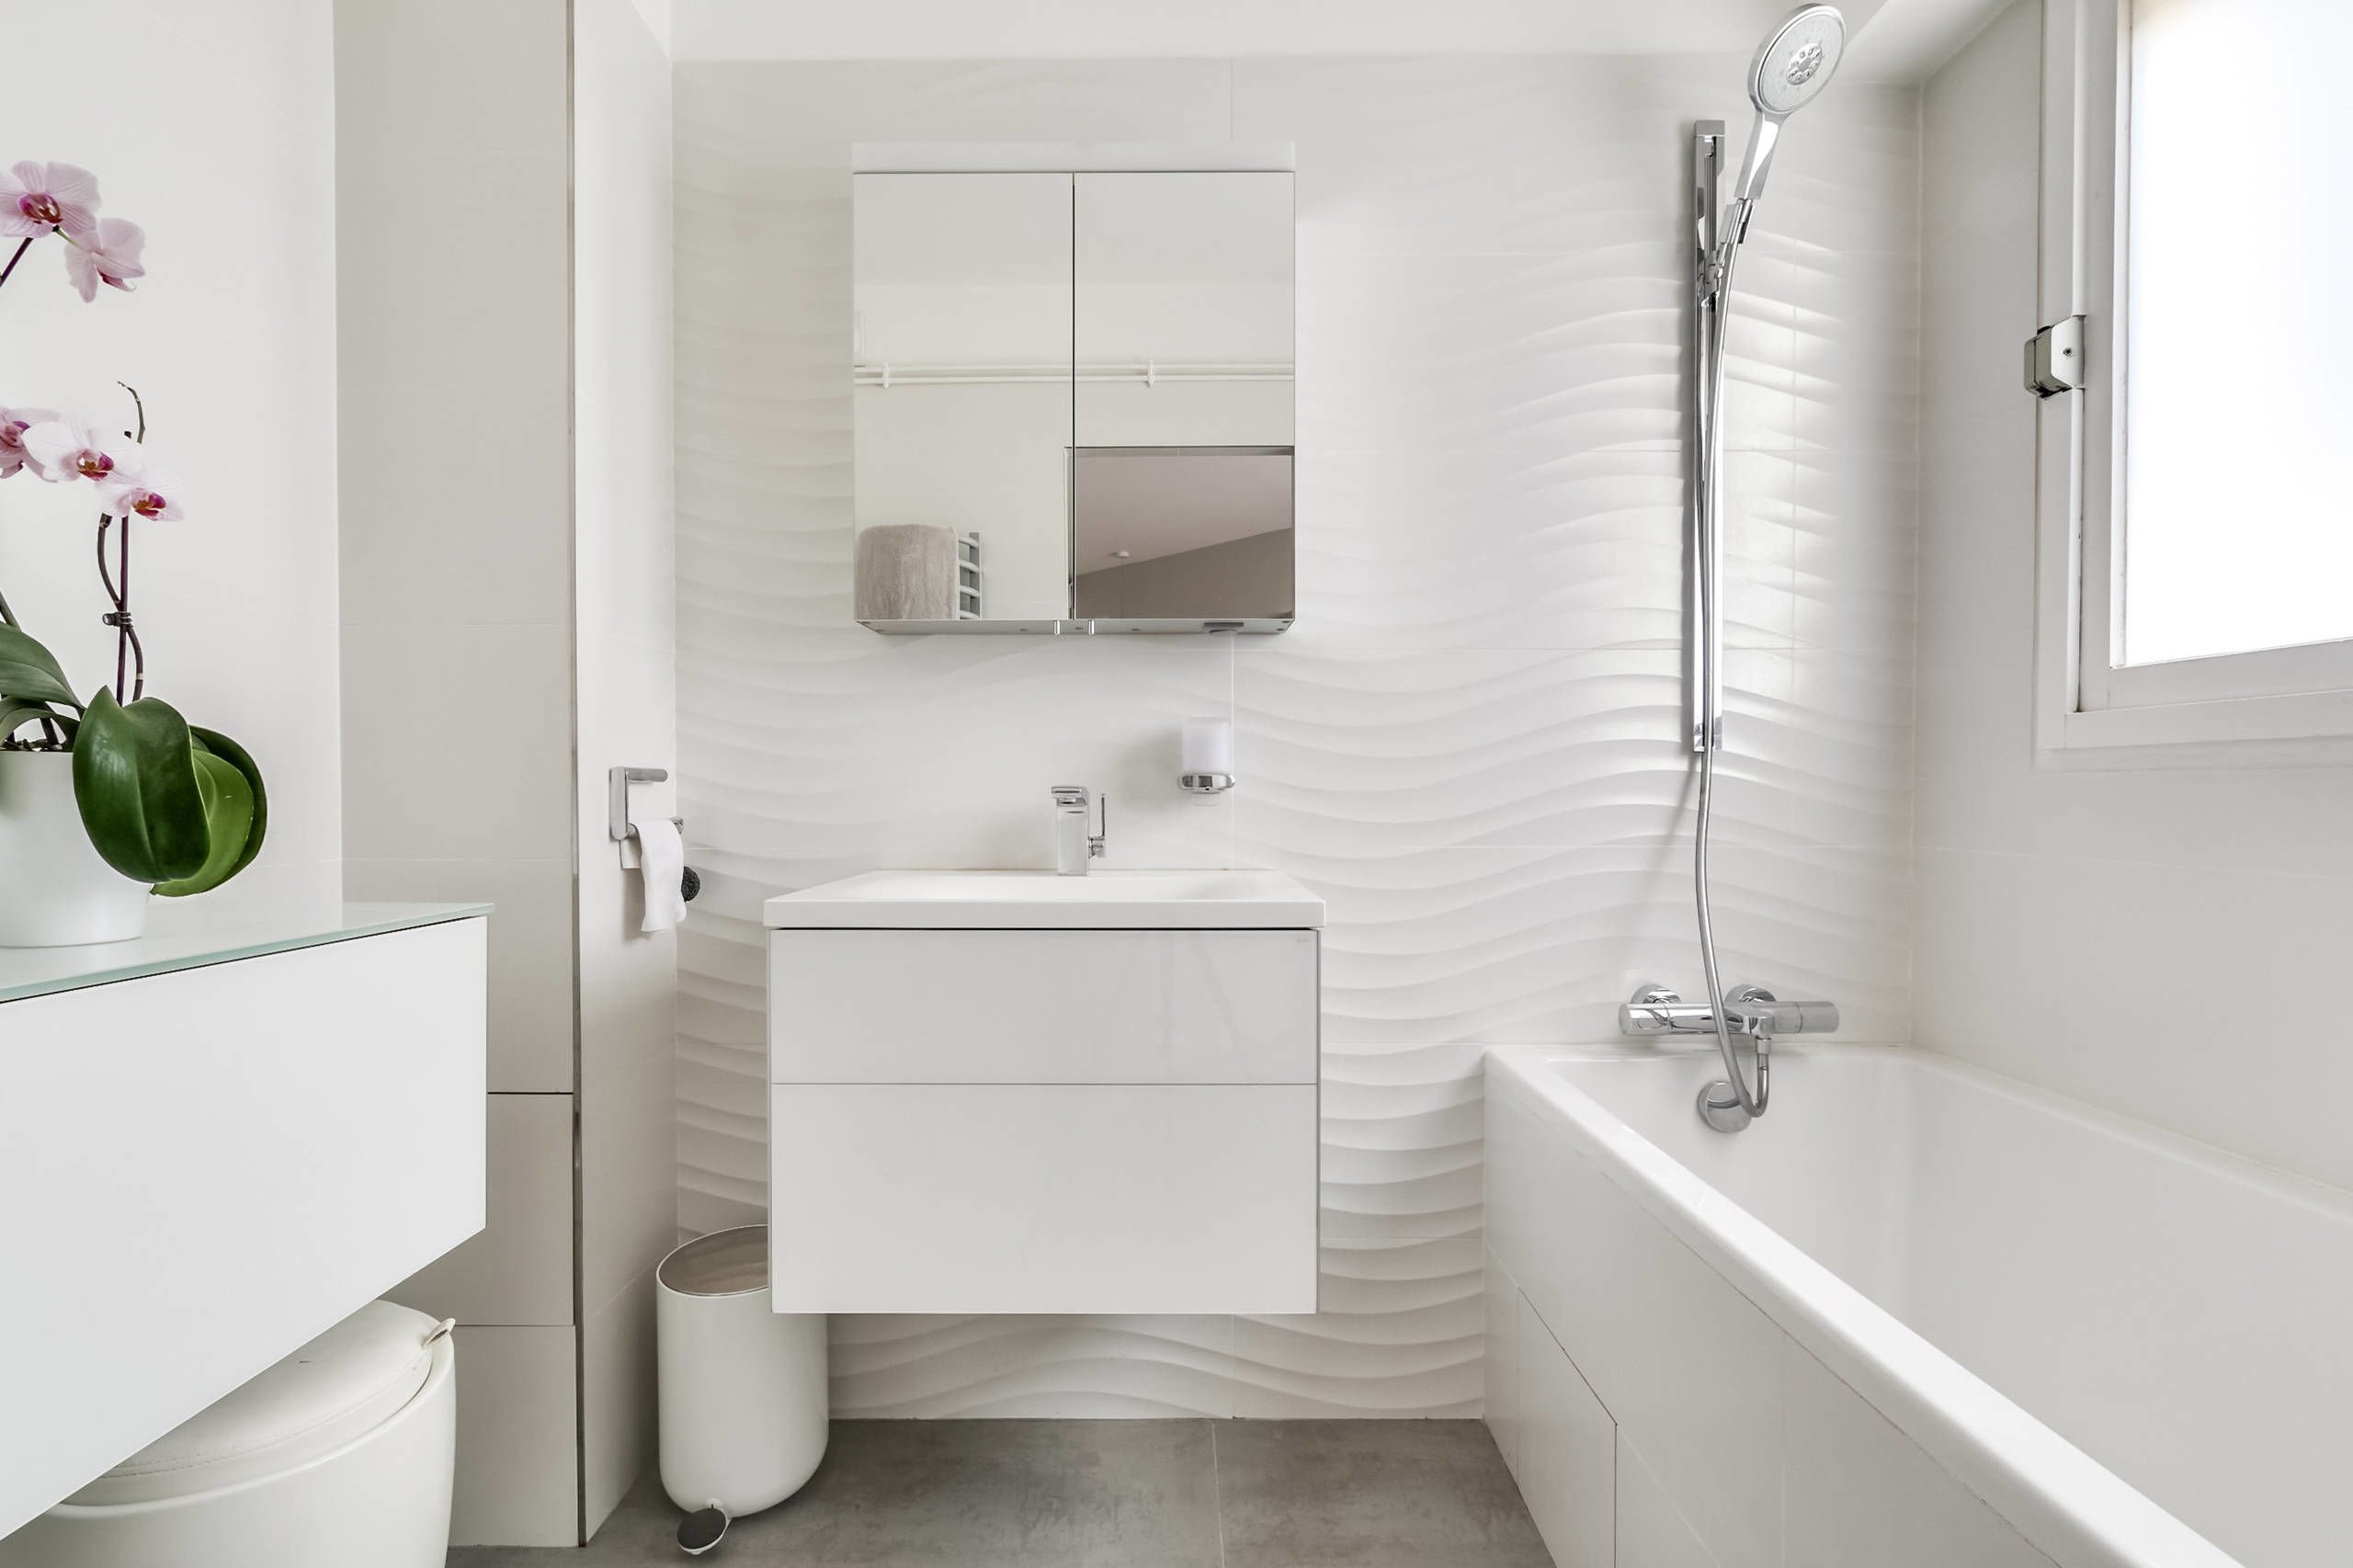 Sử dụng tông màu trắng toàn bộ khiến không gian phòng tắm rộng rãi và tinh tế